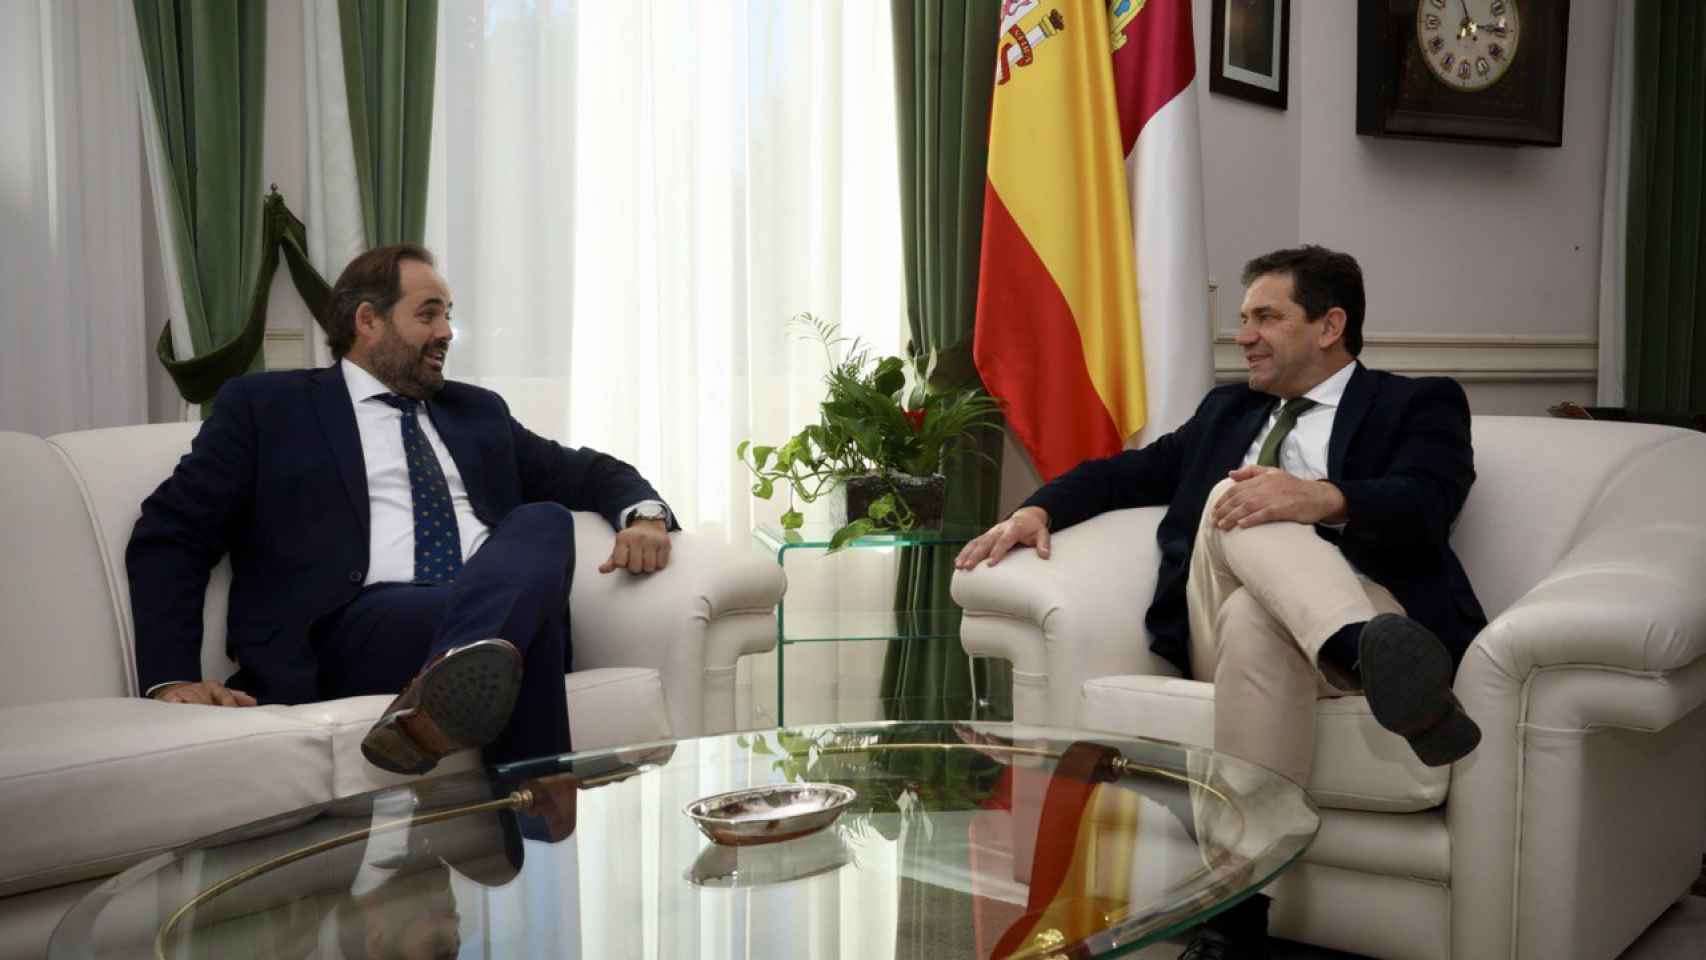 Encuentro oficial de Paco Núñez y Miguel Ángel Valverde